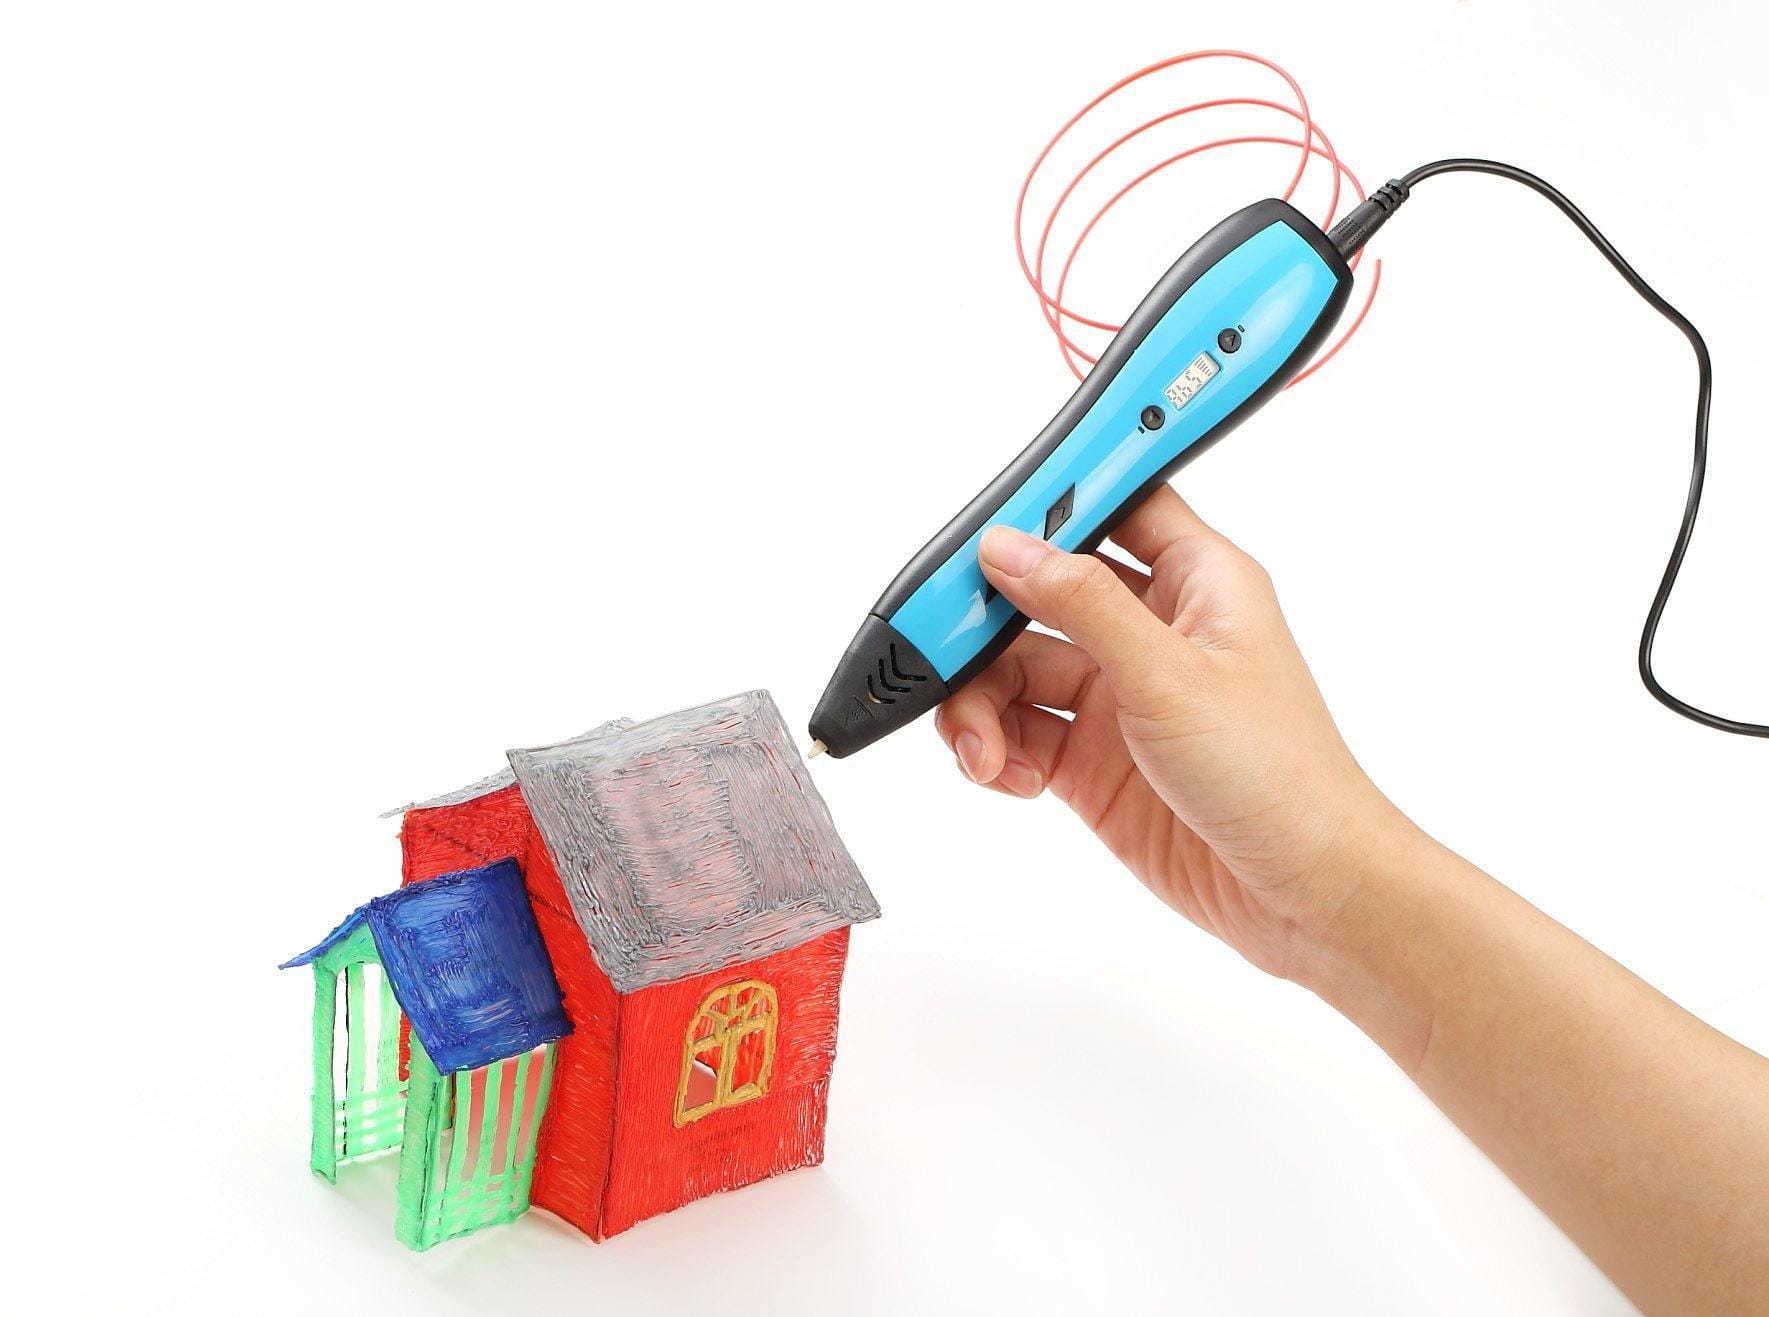 ezy2find 3D Pens Blue / EU 3D printing pen for children